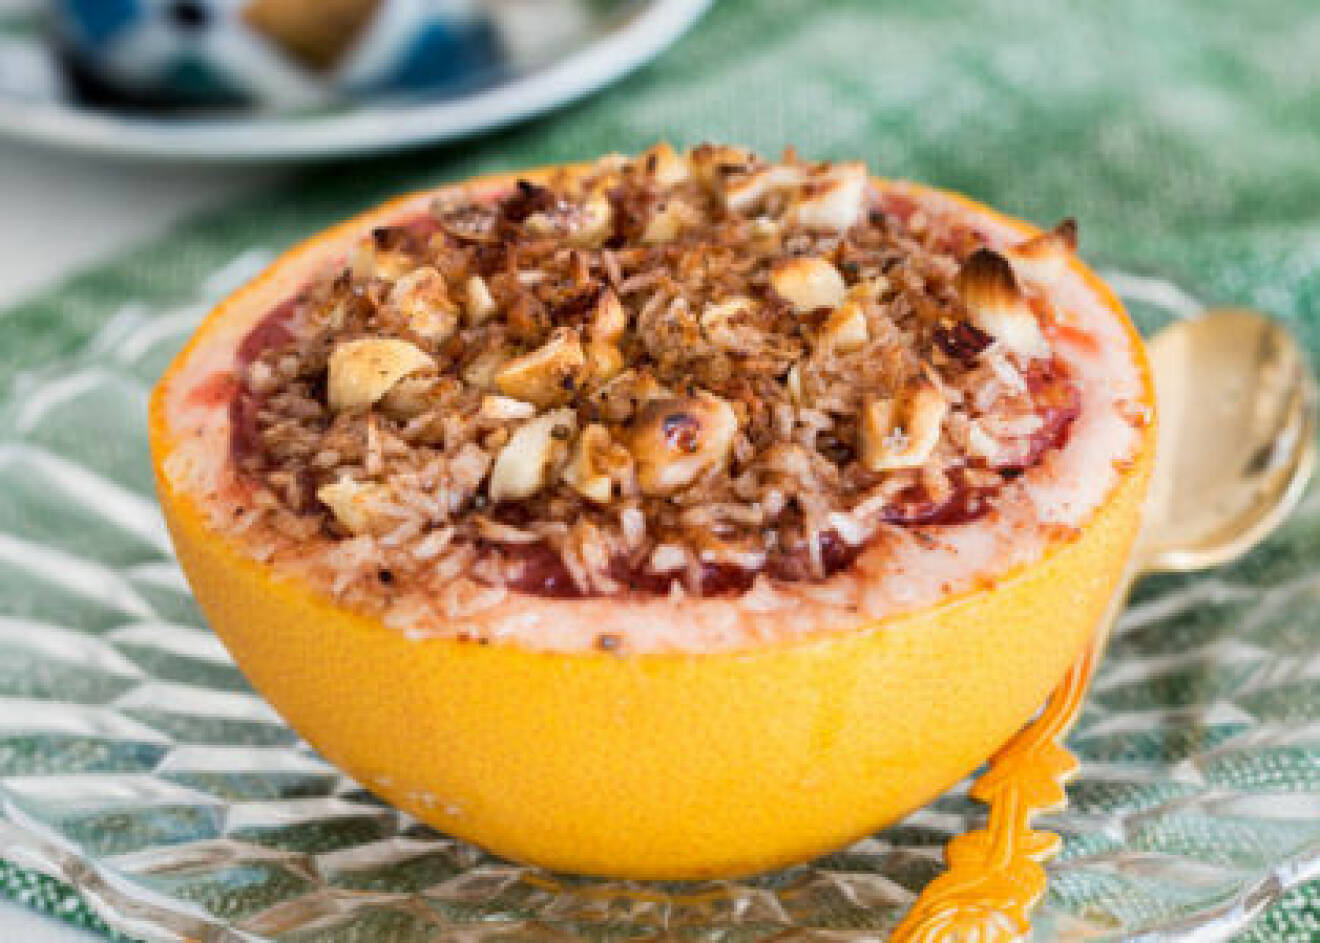 Prova att toppa grapefrukten med nötter!